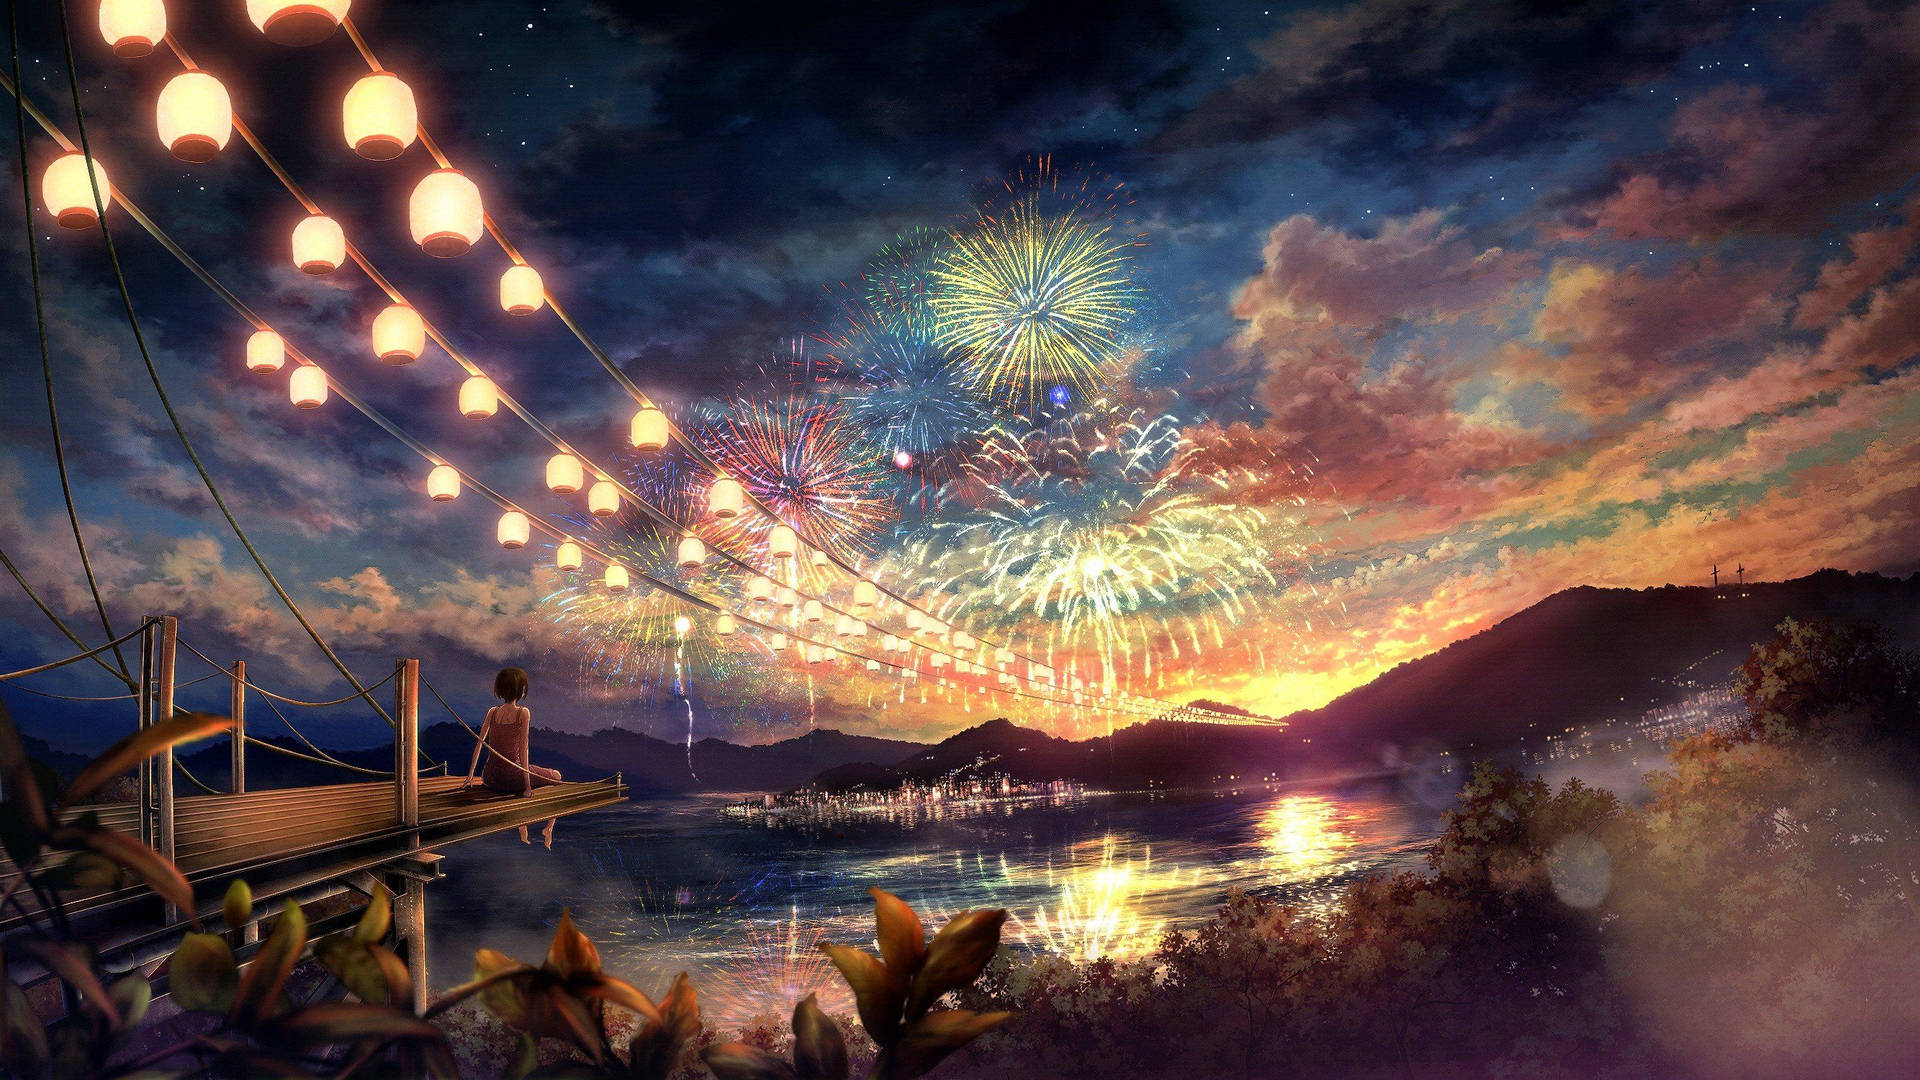 "Escape into a breathtaking 4K anime landscape." Wallpaper